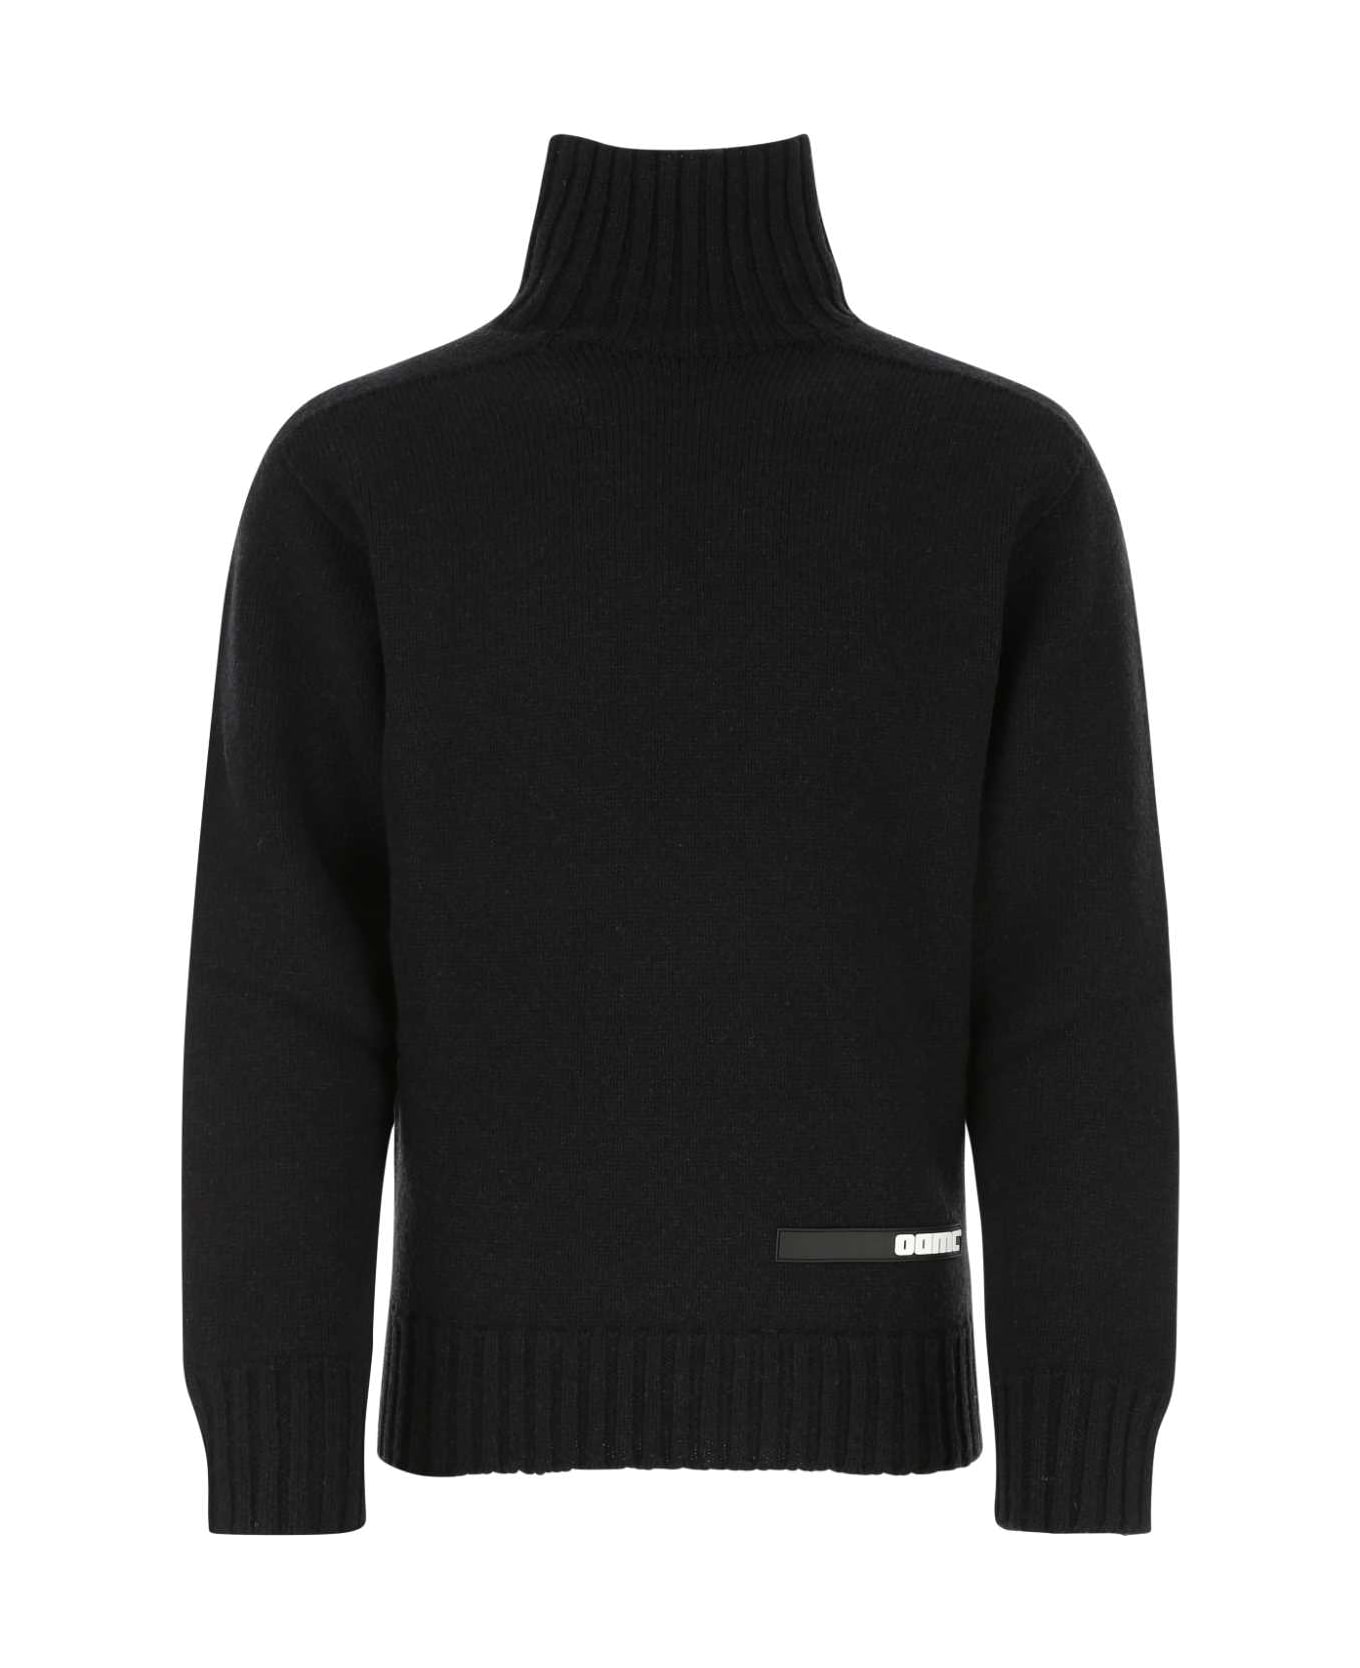 OAMC Black Wool Sweater - 001 ニットウェア